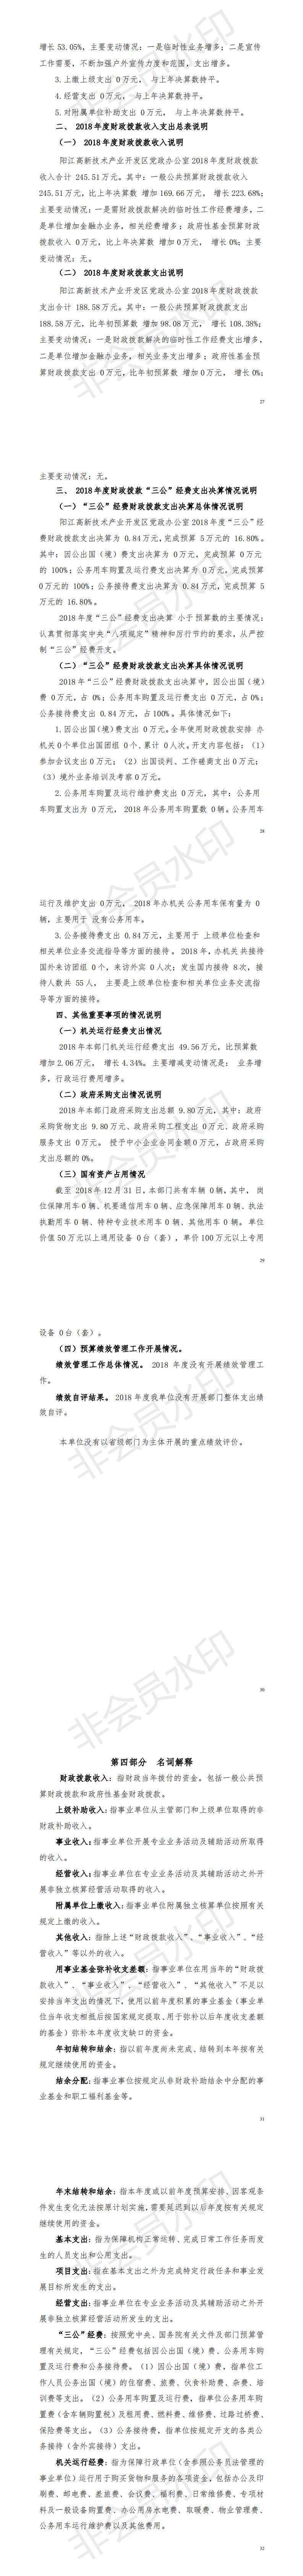 2018年阳江高新技术产业开发区党政办公室部门决算_1.png